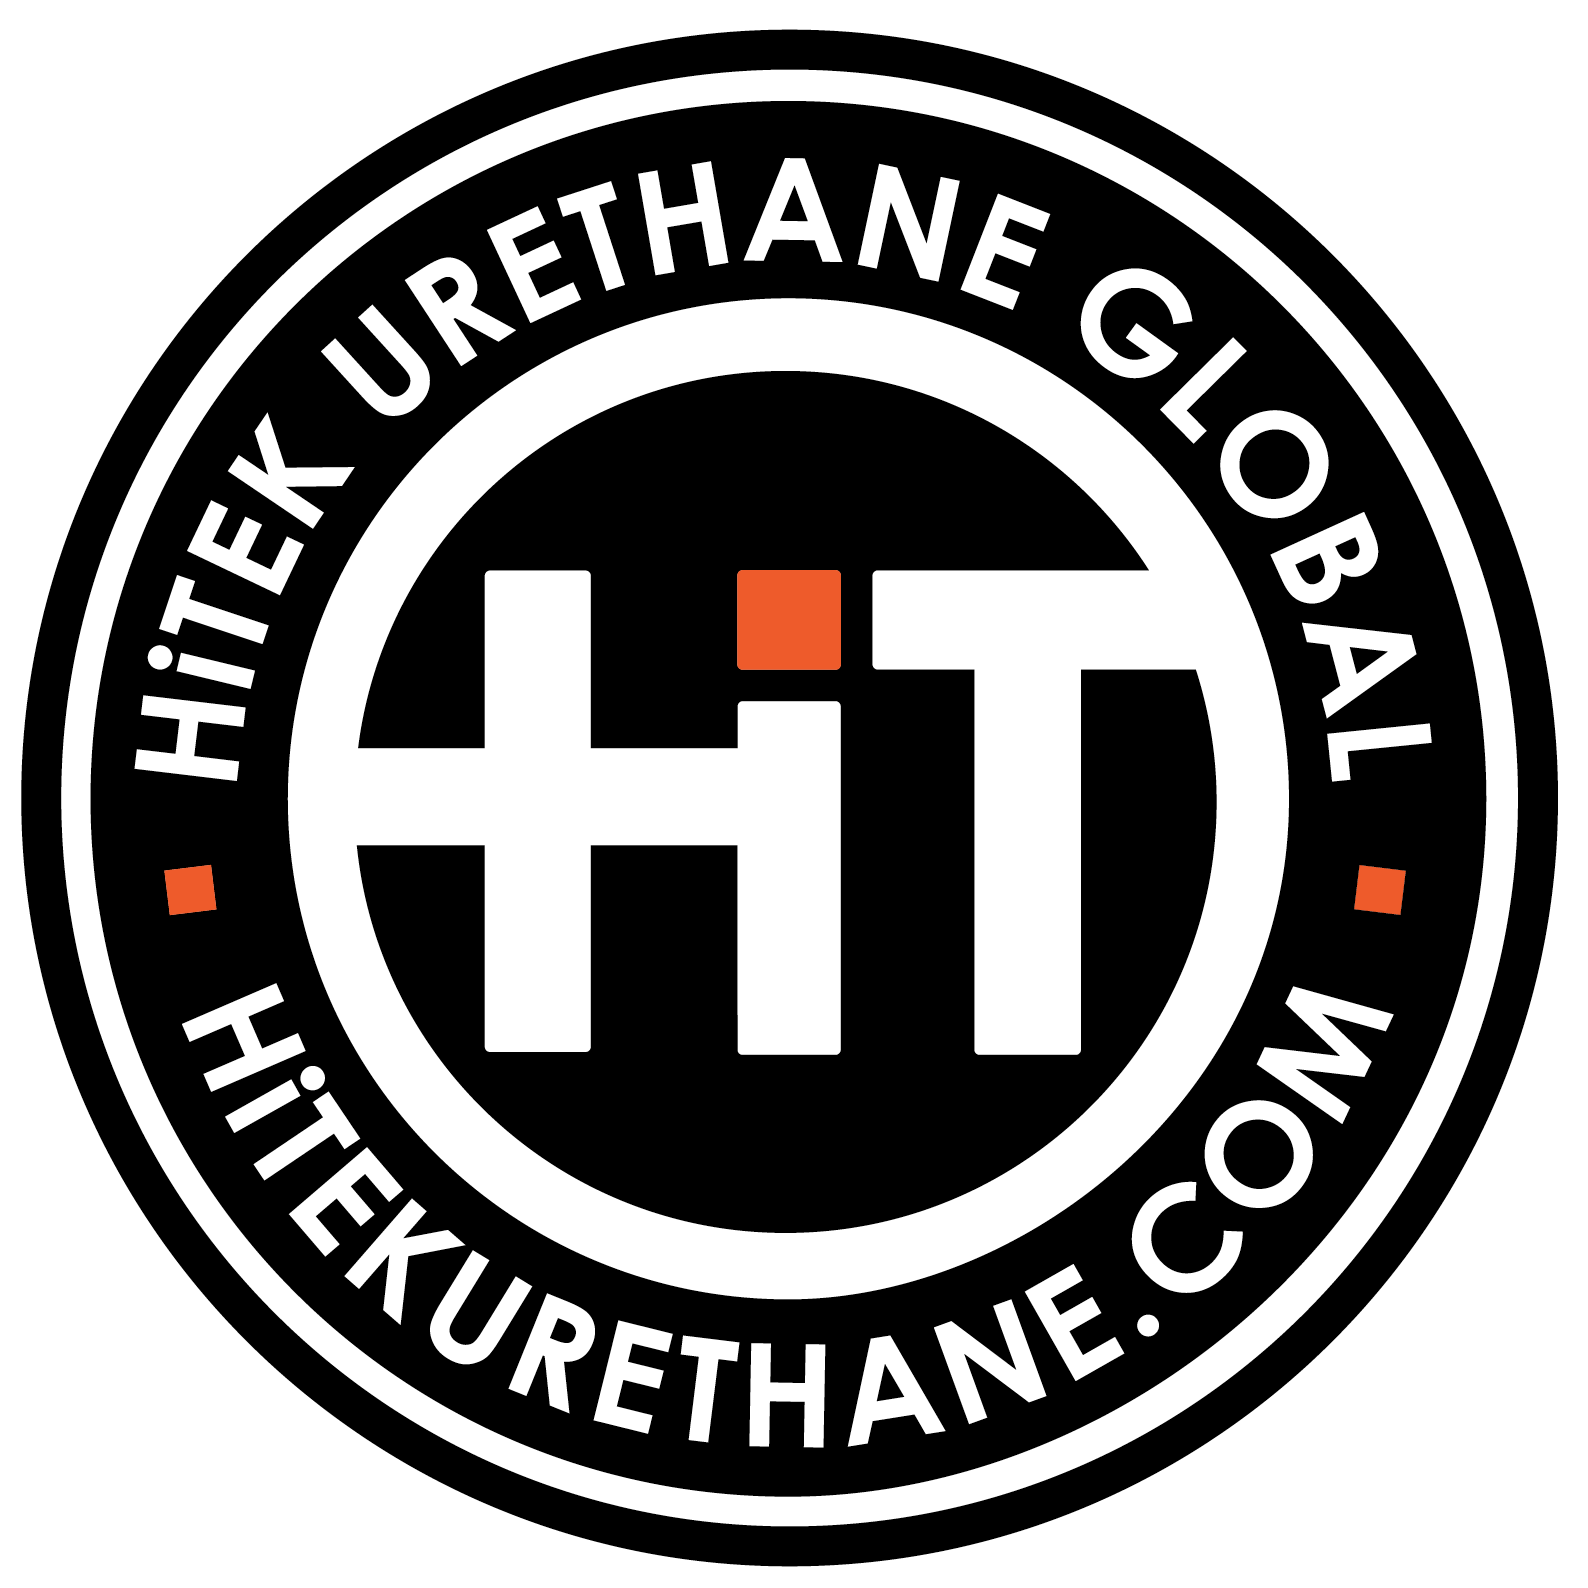 HiTEK Urethane Global Ltd.